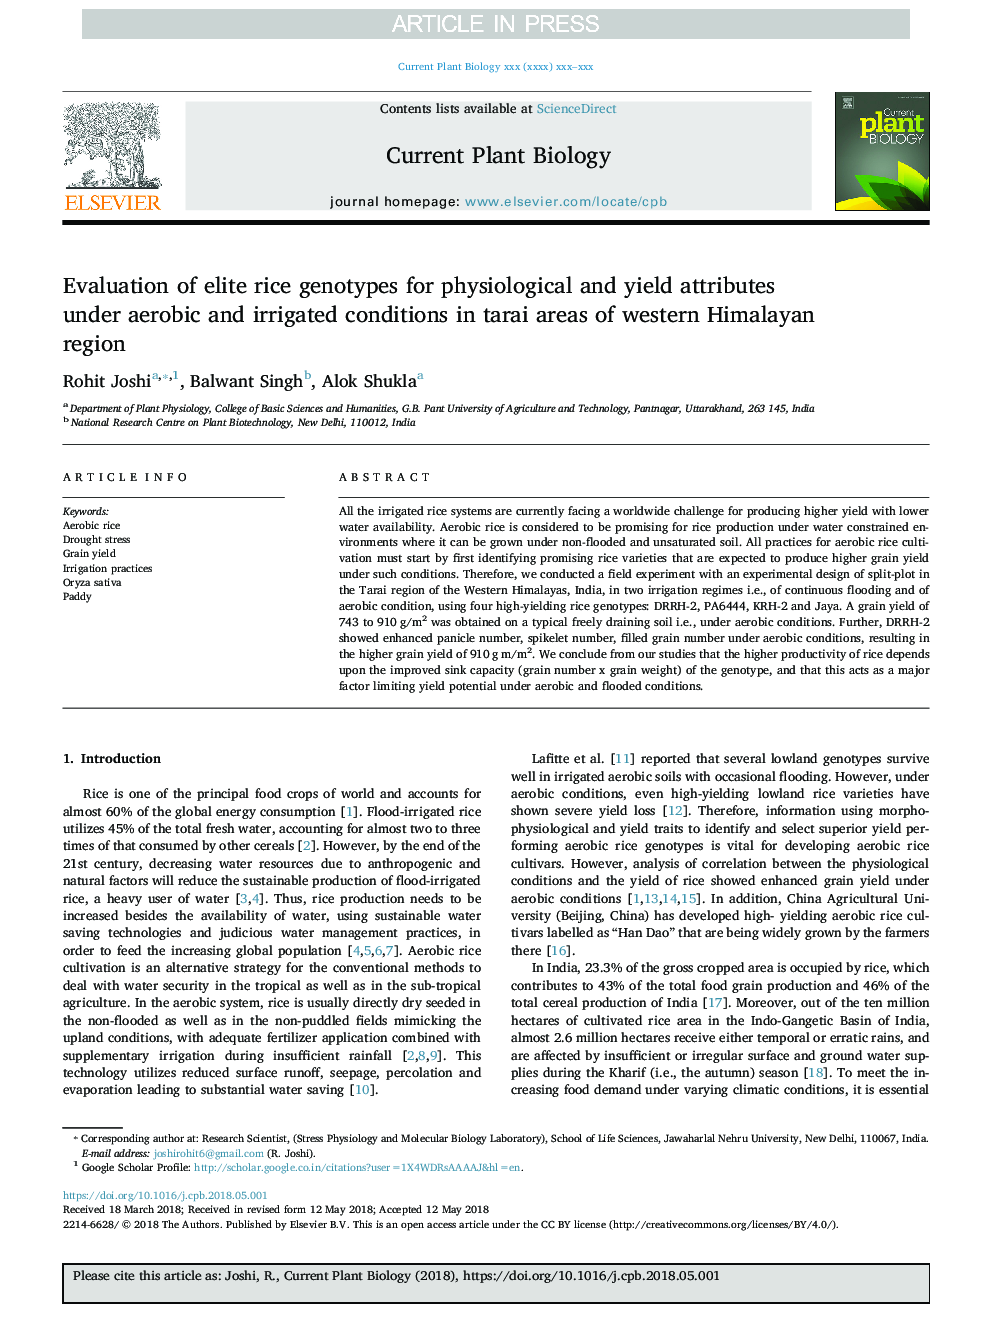 ارزیابی ژنوتیپ های برنج نخبه برای صفات فیزیولوژیکی و عملکردی تحت شرایط هوازی و آبیاری در مناطق تارای منطقه هیمالیا غربی 